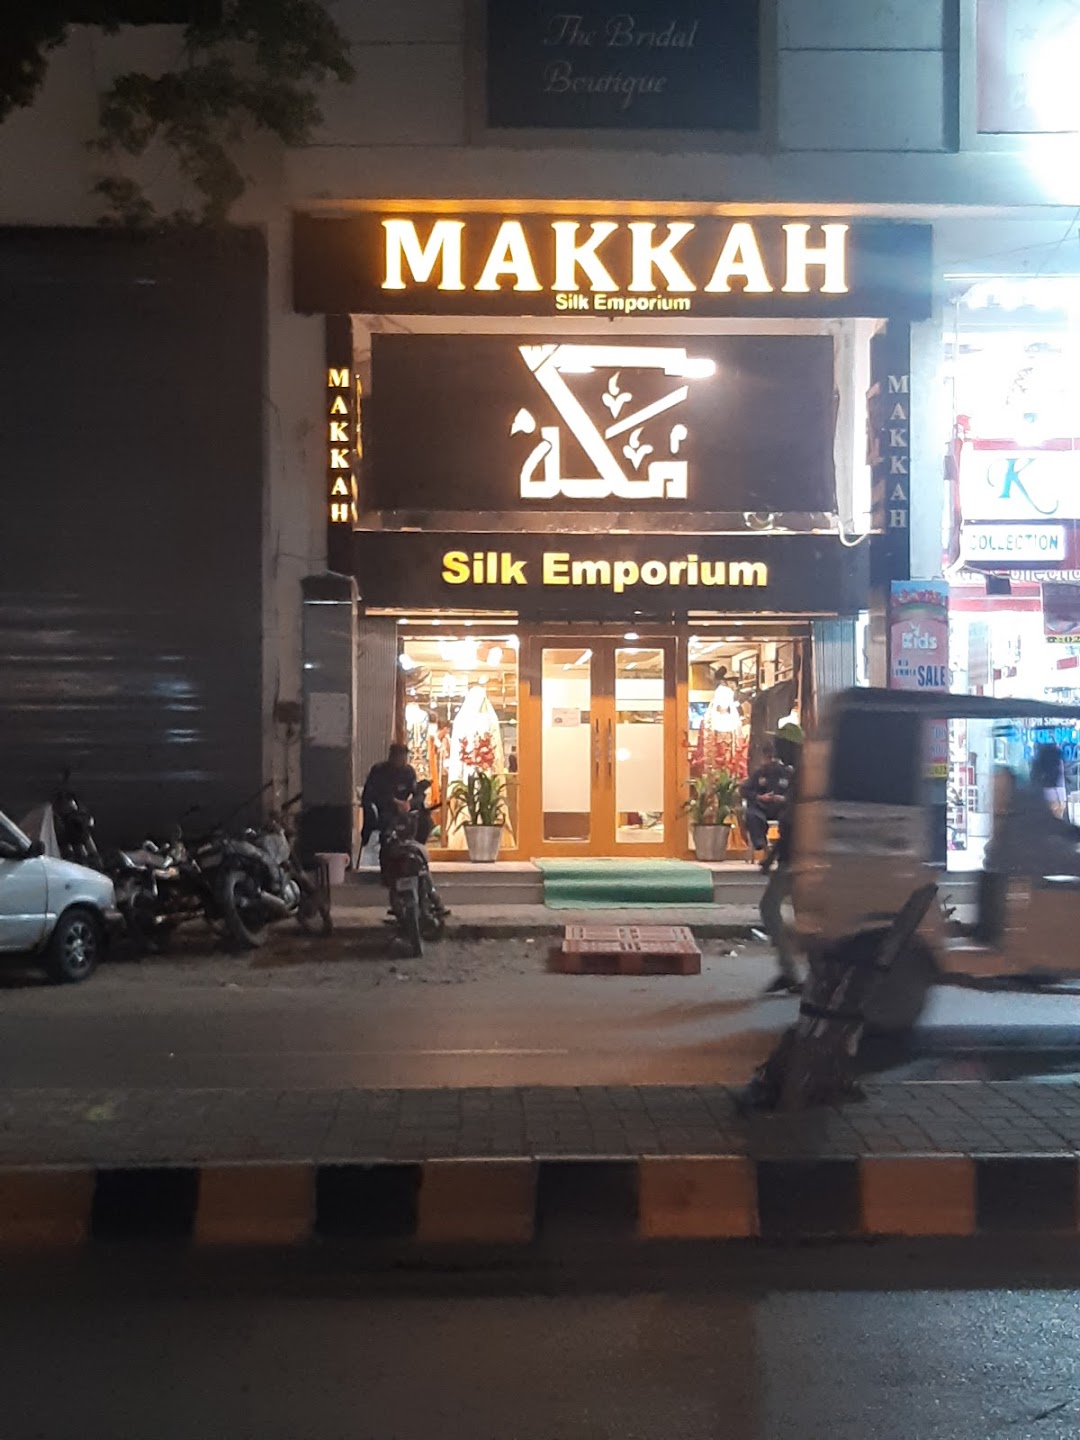 Makkah Silk Emporium